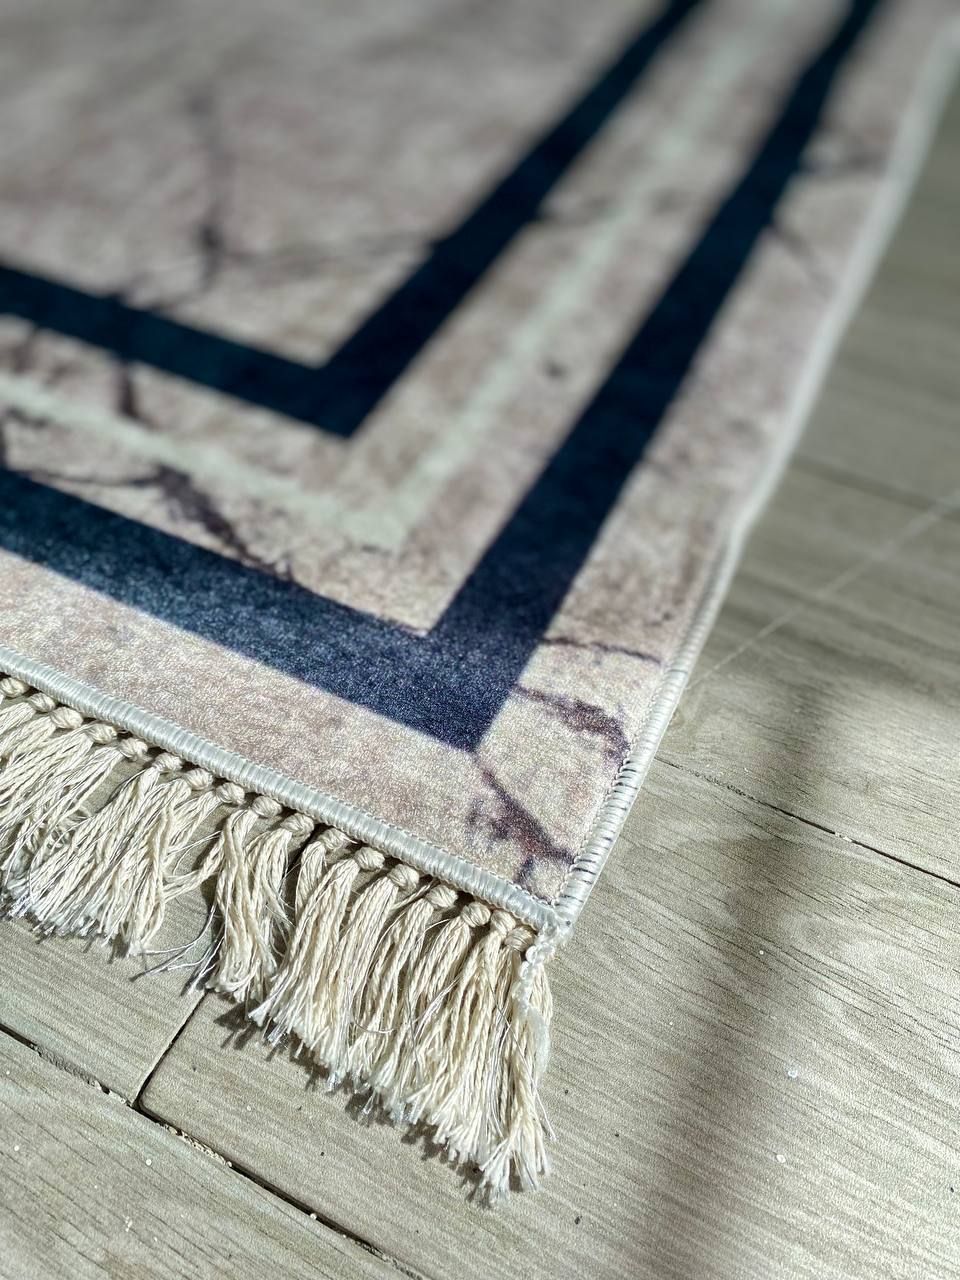 Турецький безворсовий килим "Агат" підкладка з еко-шкіри